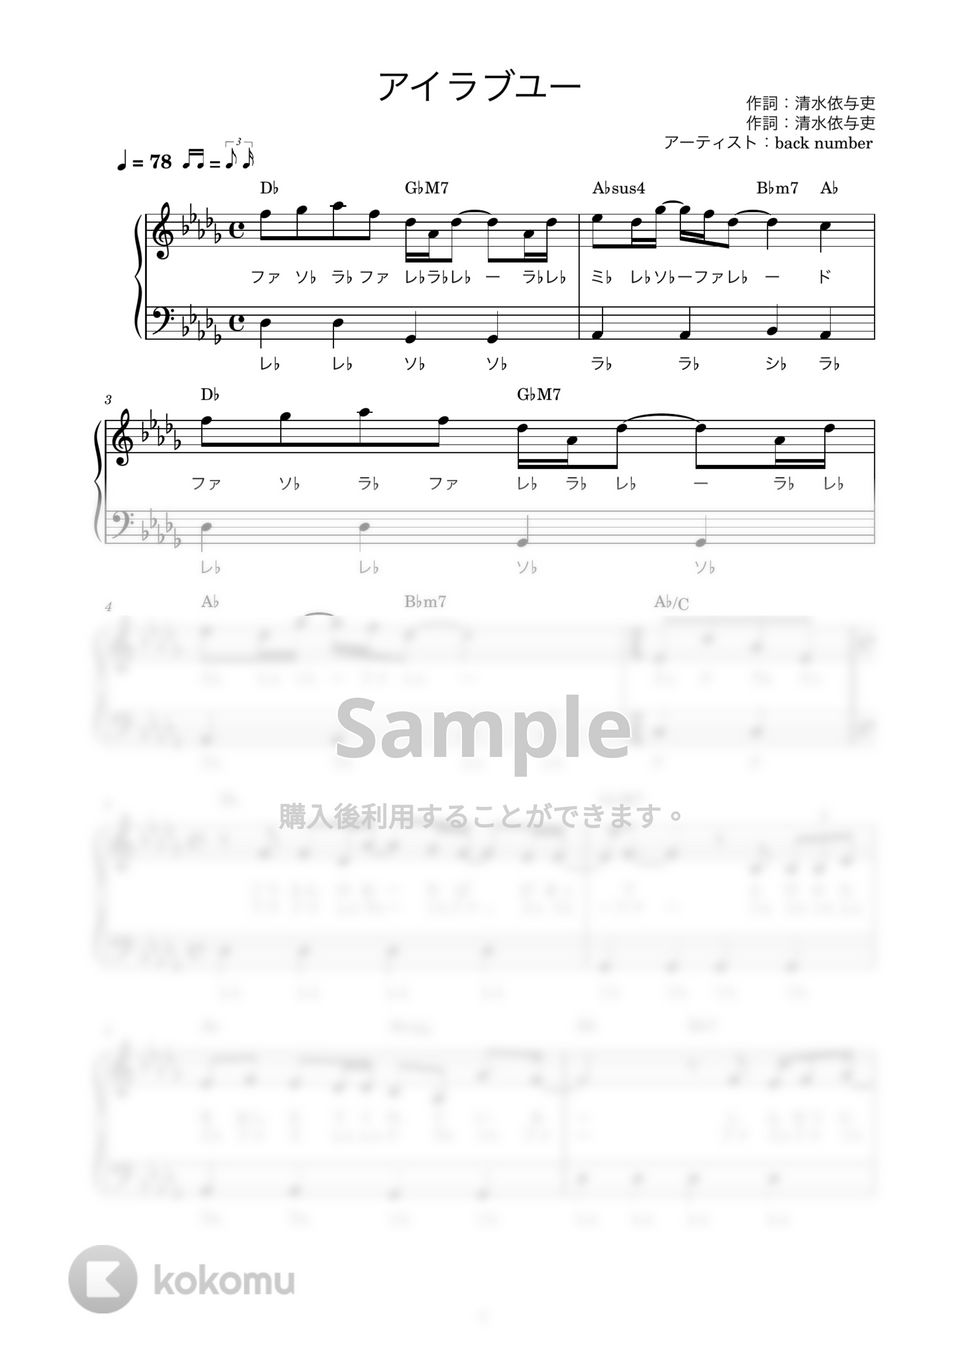 back number - アイラブユー (ピアノ楽譜 / かんたん両手 / 歌詞付き / ドレミ付き / 初心者向き) by piano.tokyo